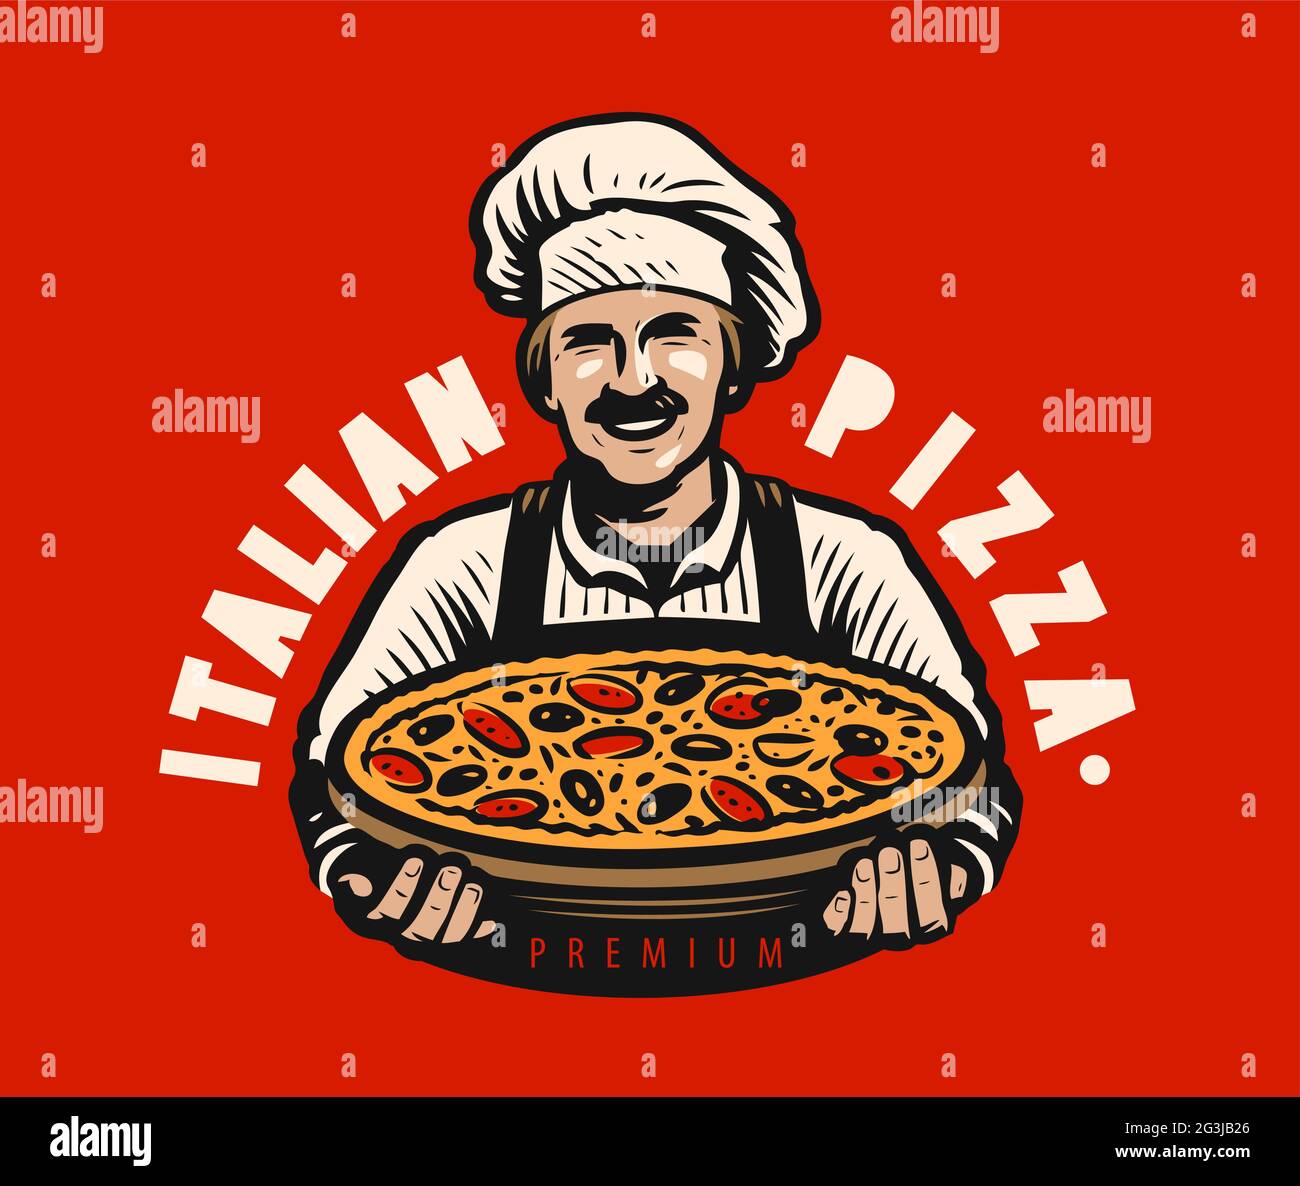 Chef avec pizza italienne fraîchement cuite. Illustration vectorielle du logo du restaurant Illustration de Vecteur